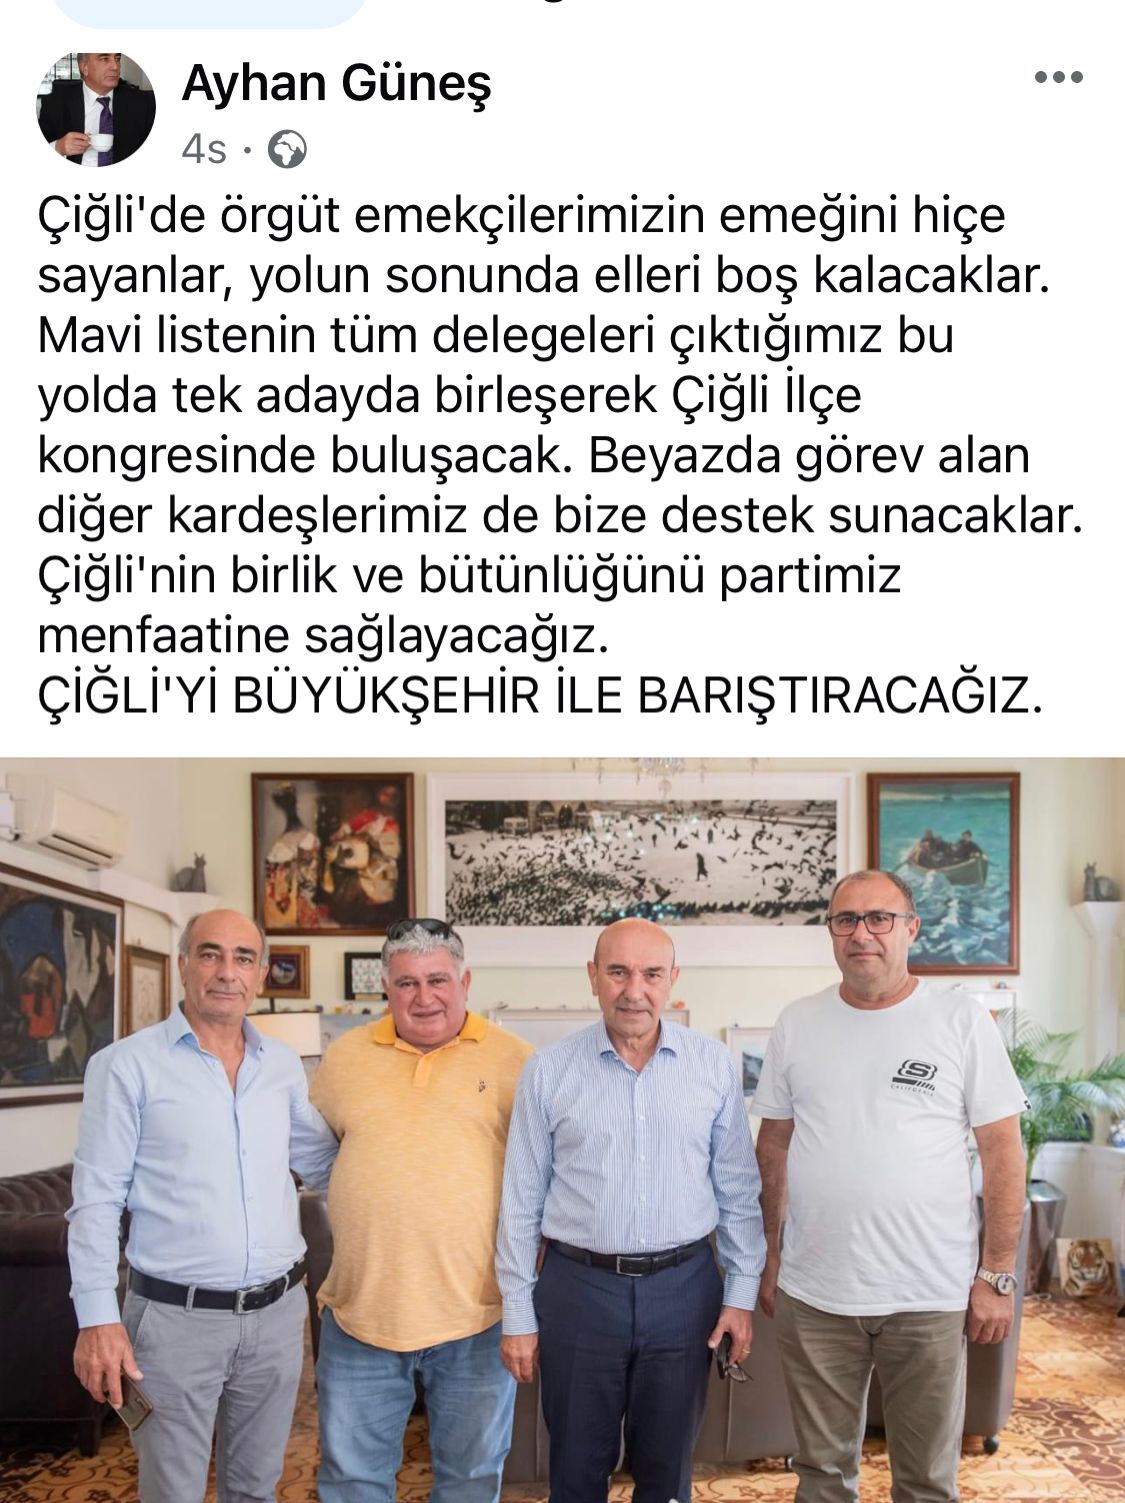 Abdullah Polat Tunç Soyer Sadece Utku Gümrükçü'ye Değil Bütün Çiğli'ye Kazık Attı!!!